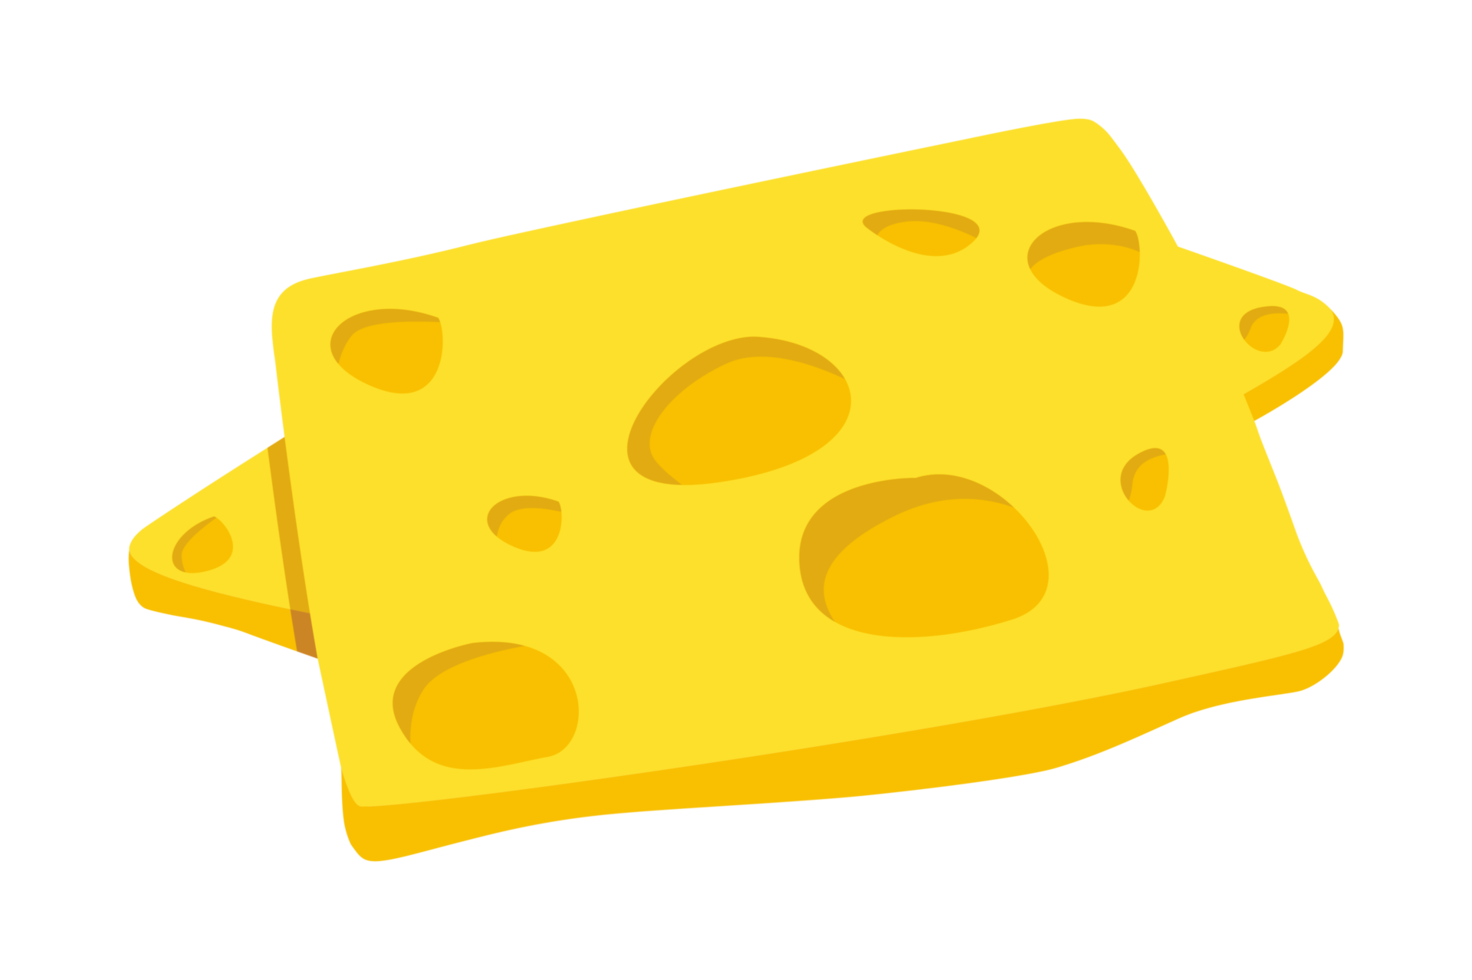 queijo em fatias finas png